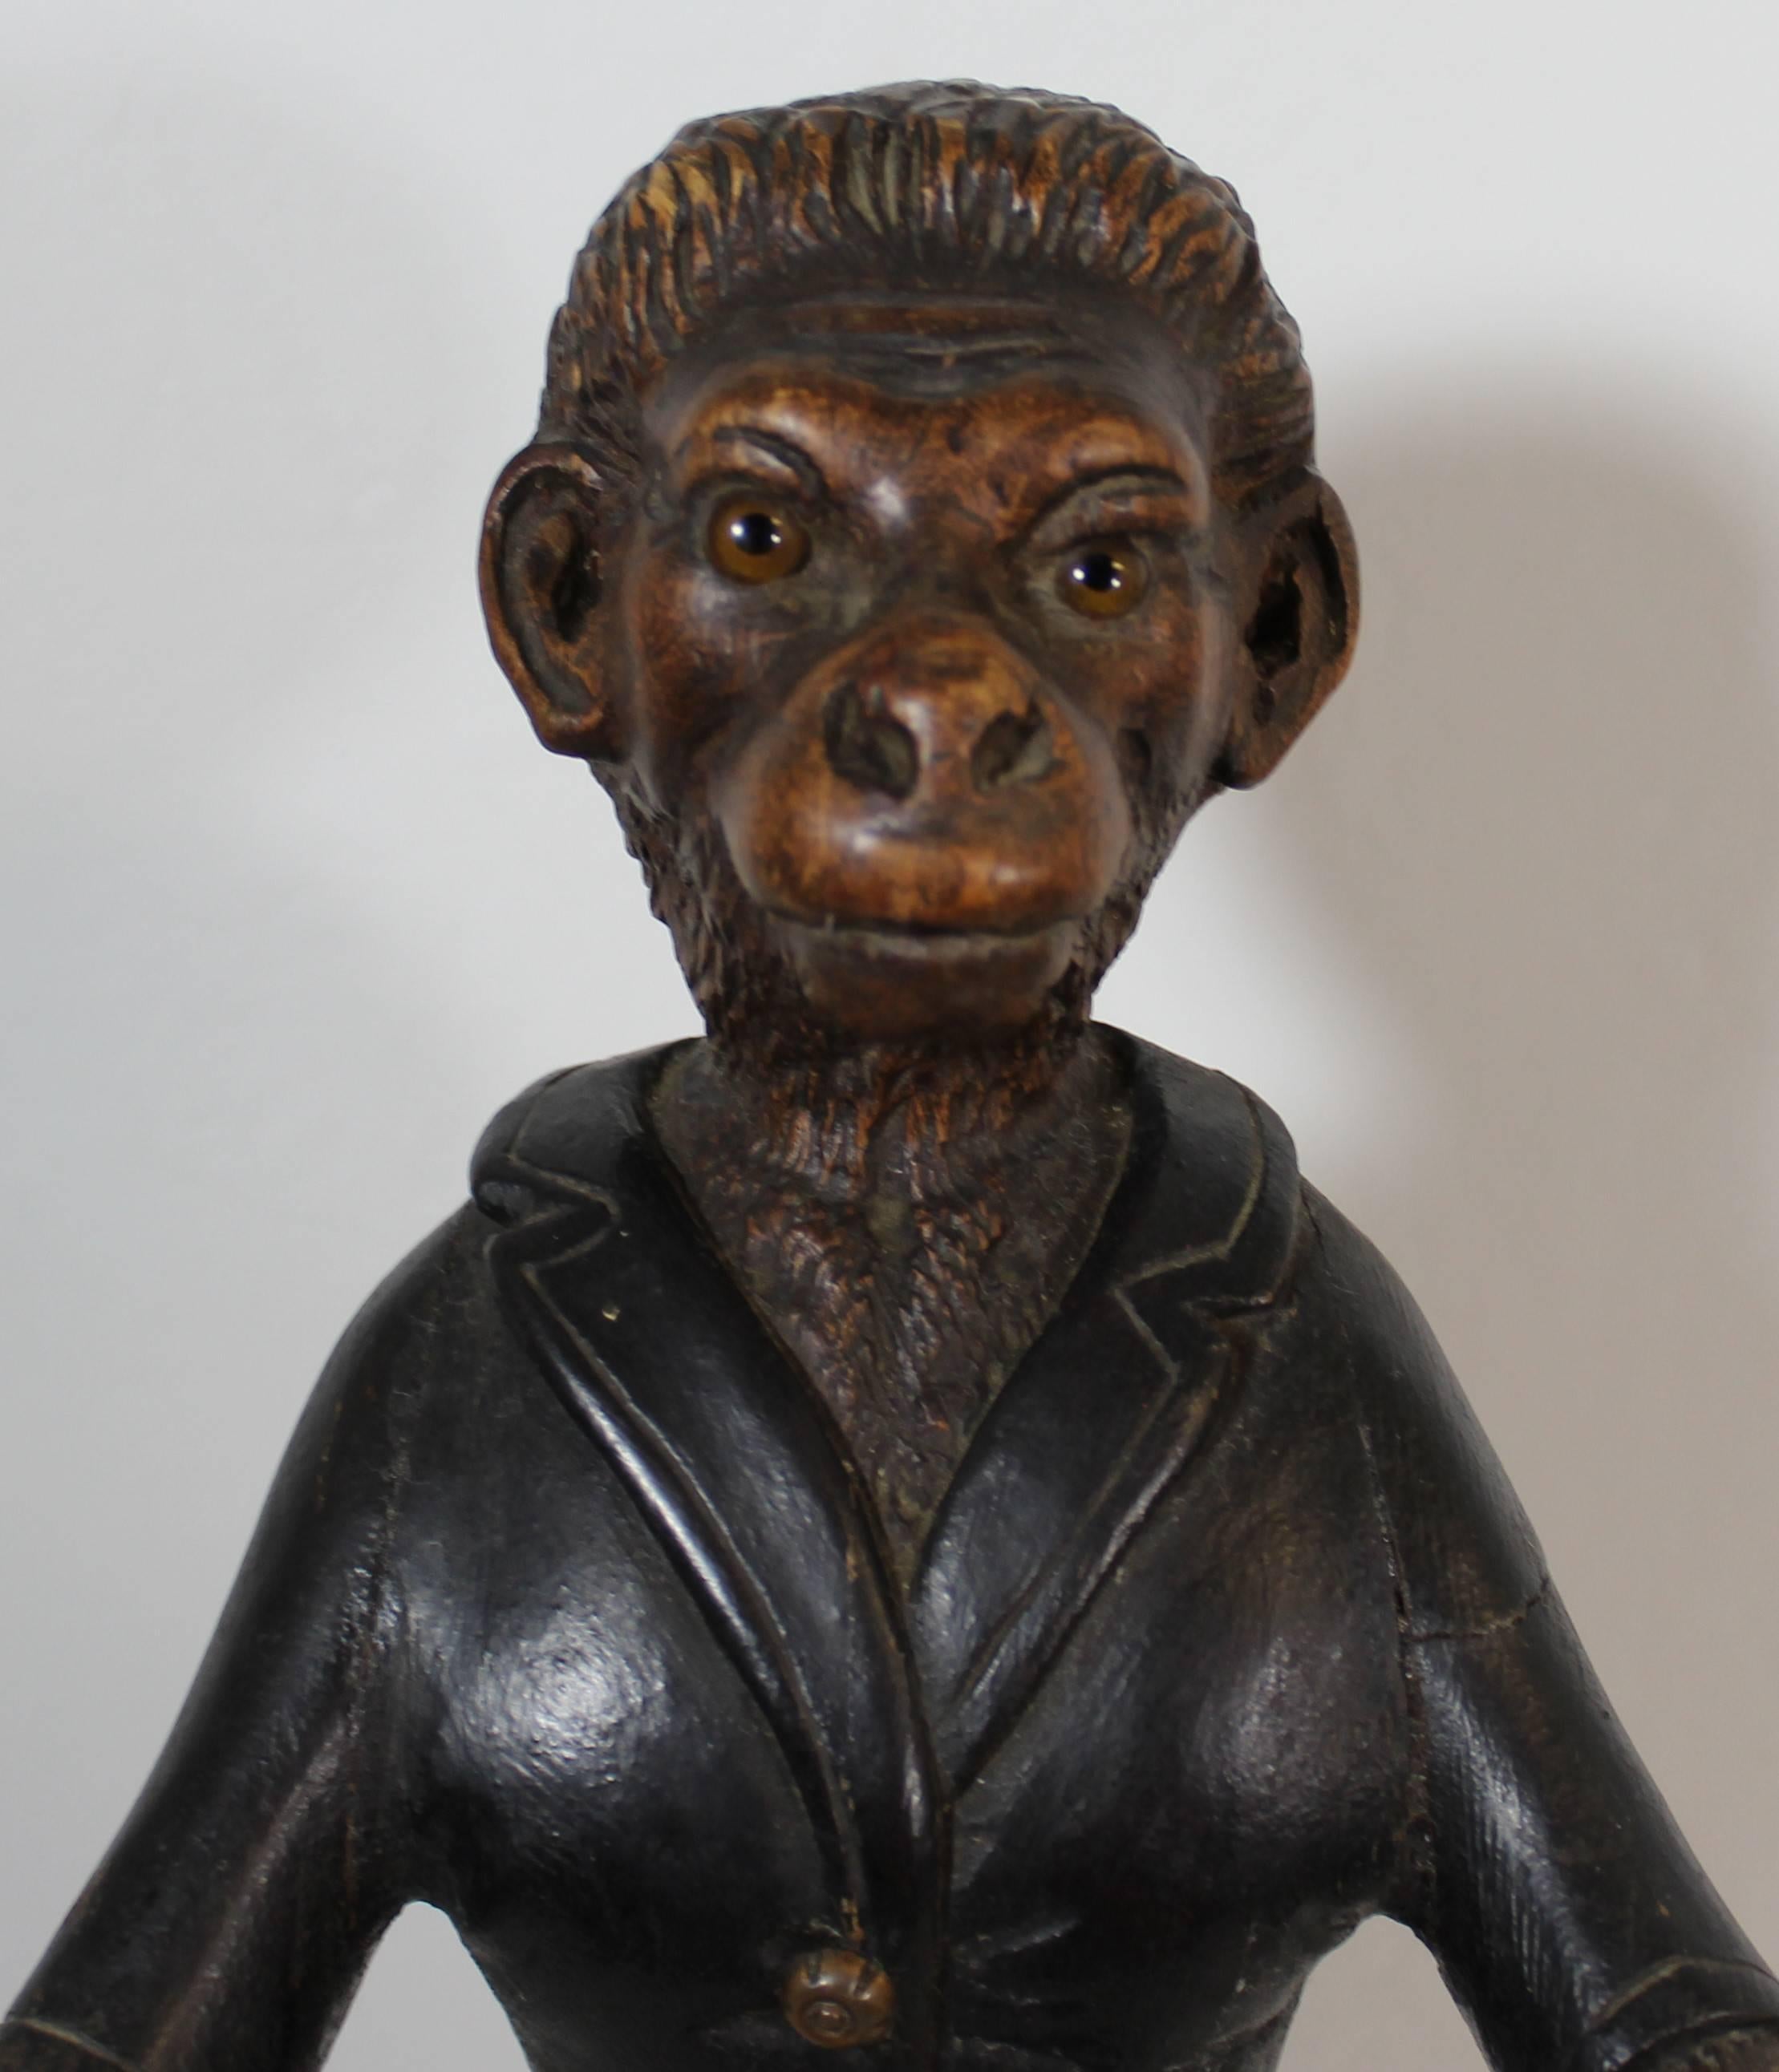 schwarzwälder Affenskulptur aus dem 19. Jahrhundert.